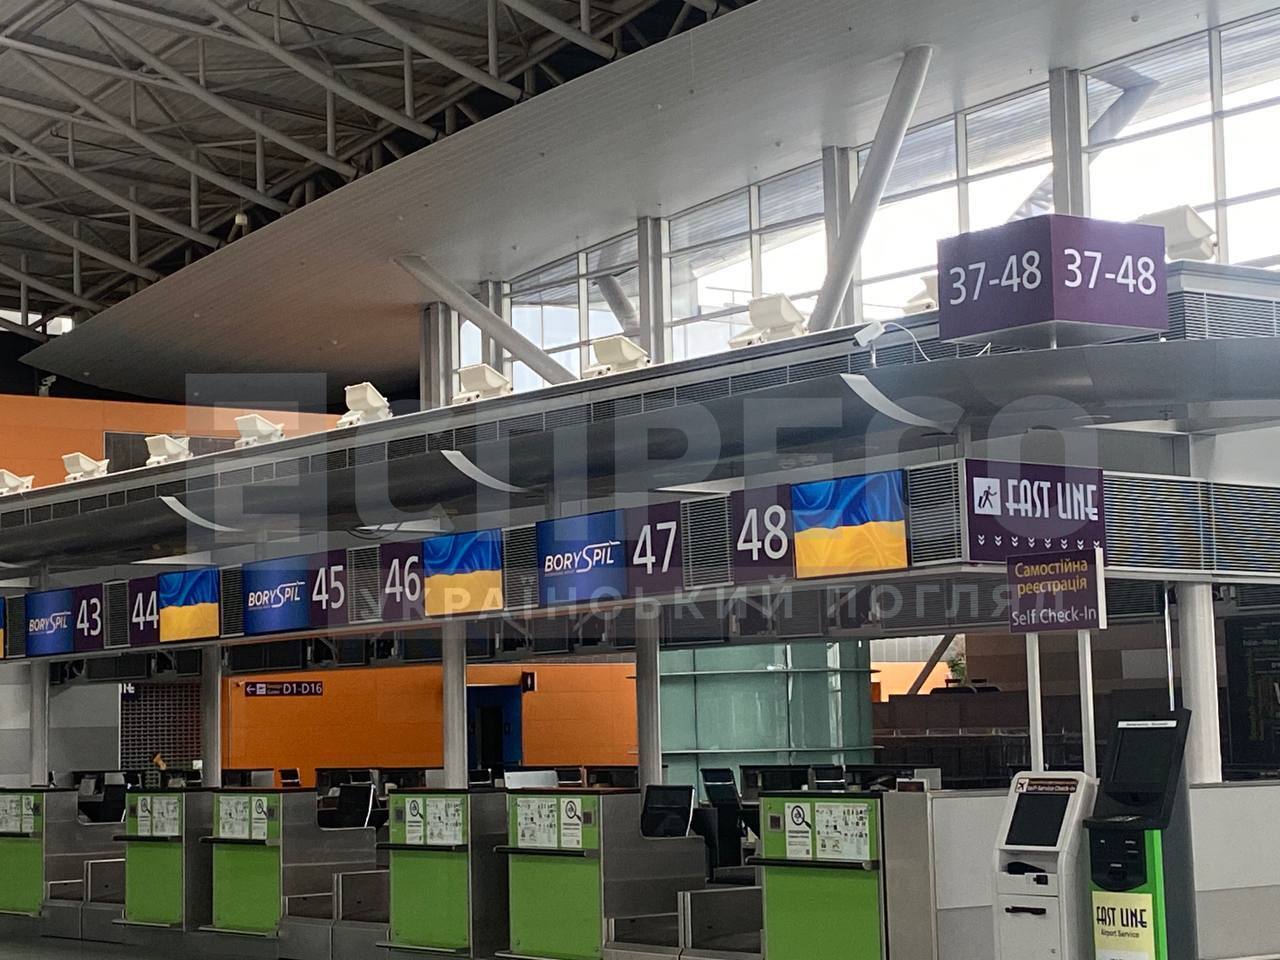 Аэропорт "Борисполь" может возобновить работу за три недели: кто работает над восстановлением и что нужно для открытия